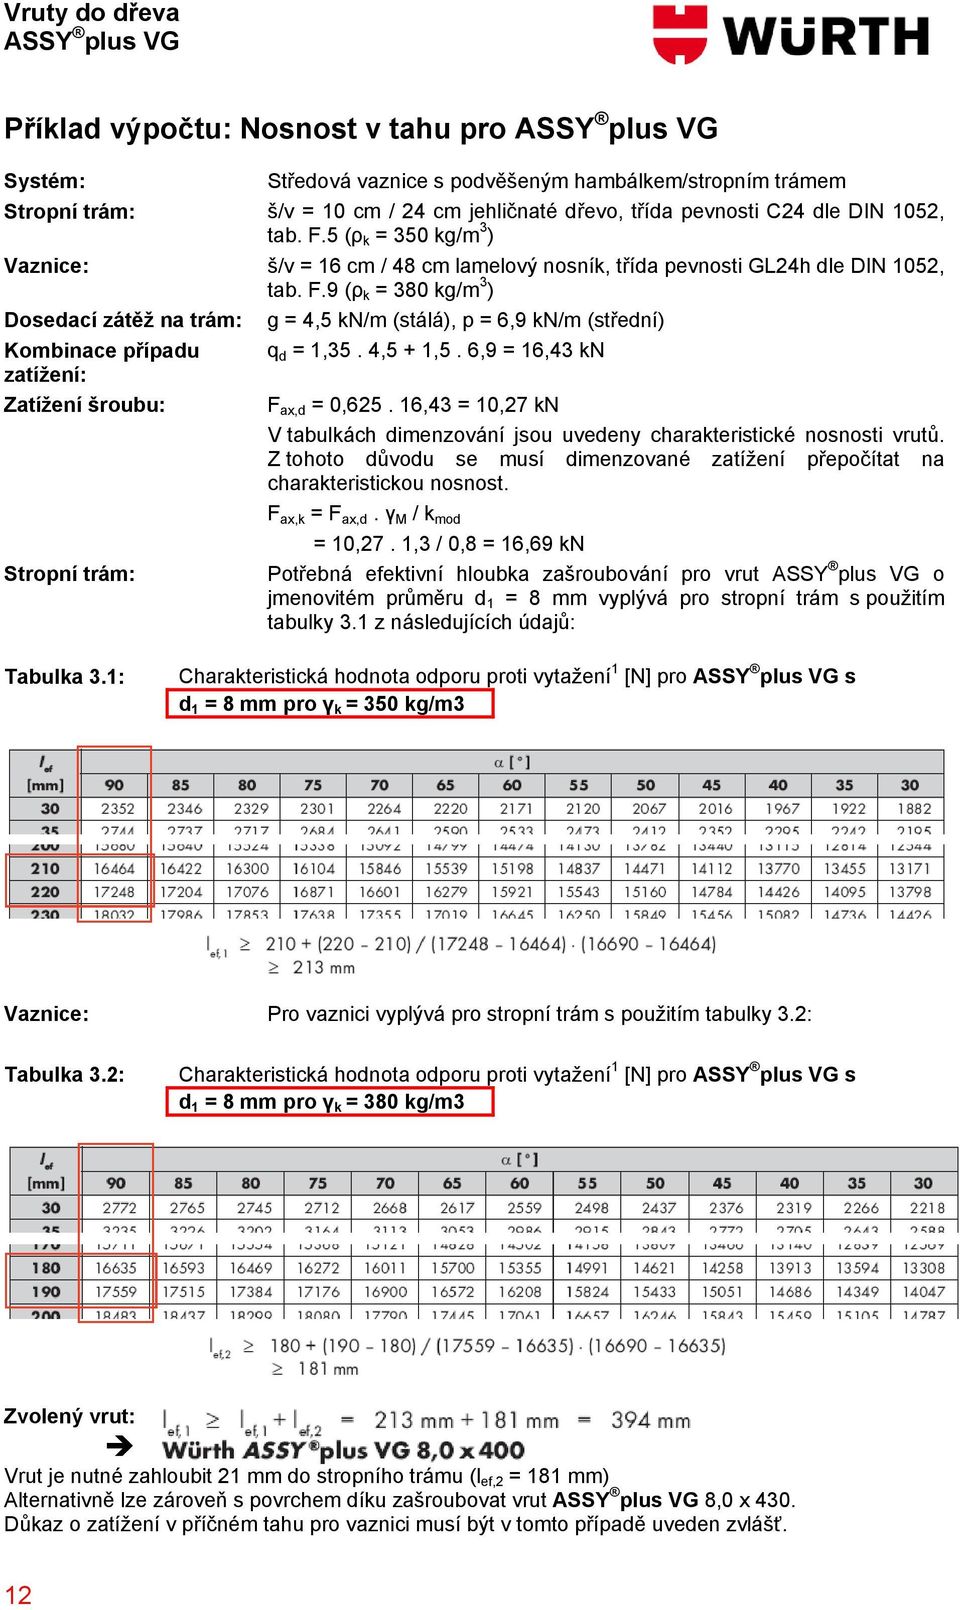 4,5 + 1,5. 6,9 = 16,43 kn zatížení: Zatížení šroubu: F ax,d = 0,625. 16,43 = 10,27 kn V tabulkách dimenzování jsou uvedeny charakteristické nosnosti vrutů.